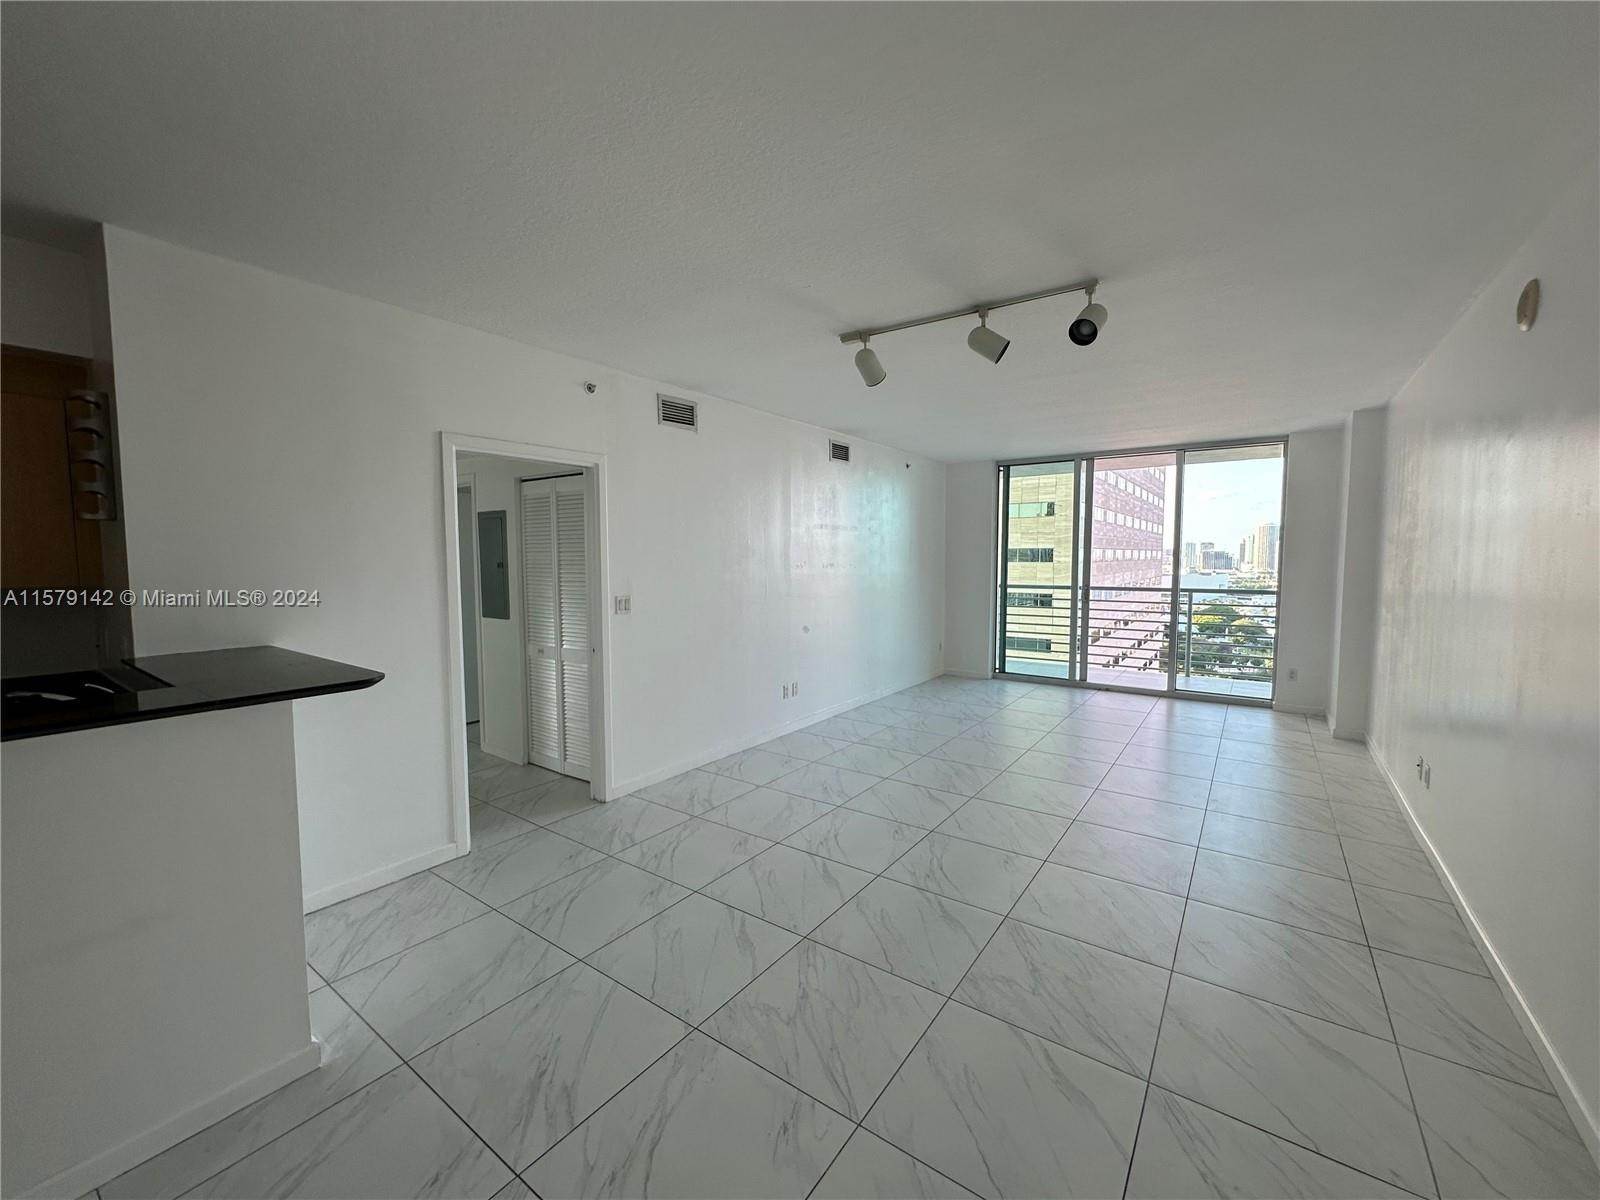 公寓 為 出售 在 Downtown Miami, Miami, FL 33131